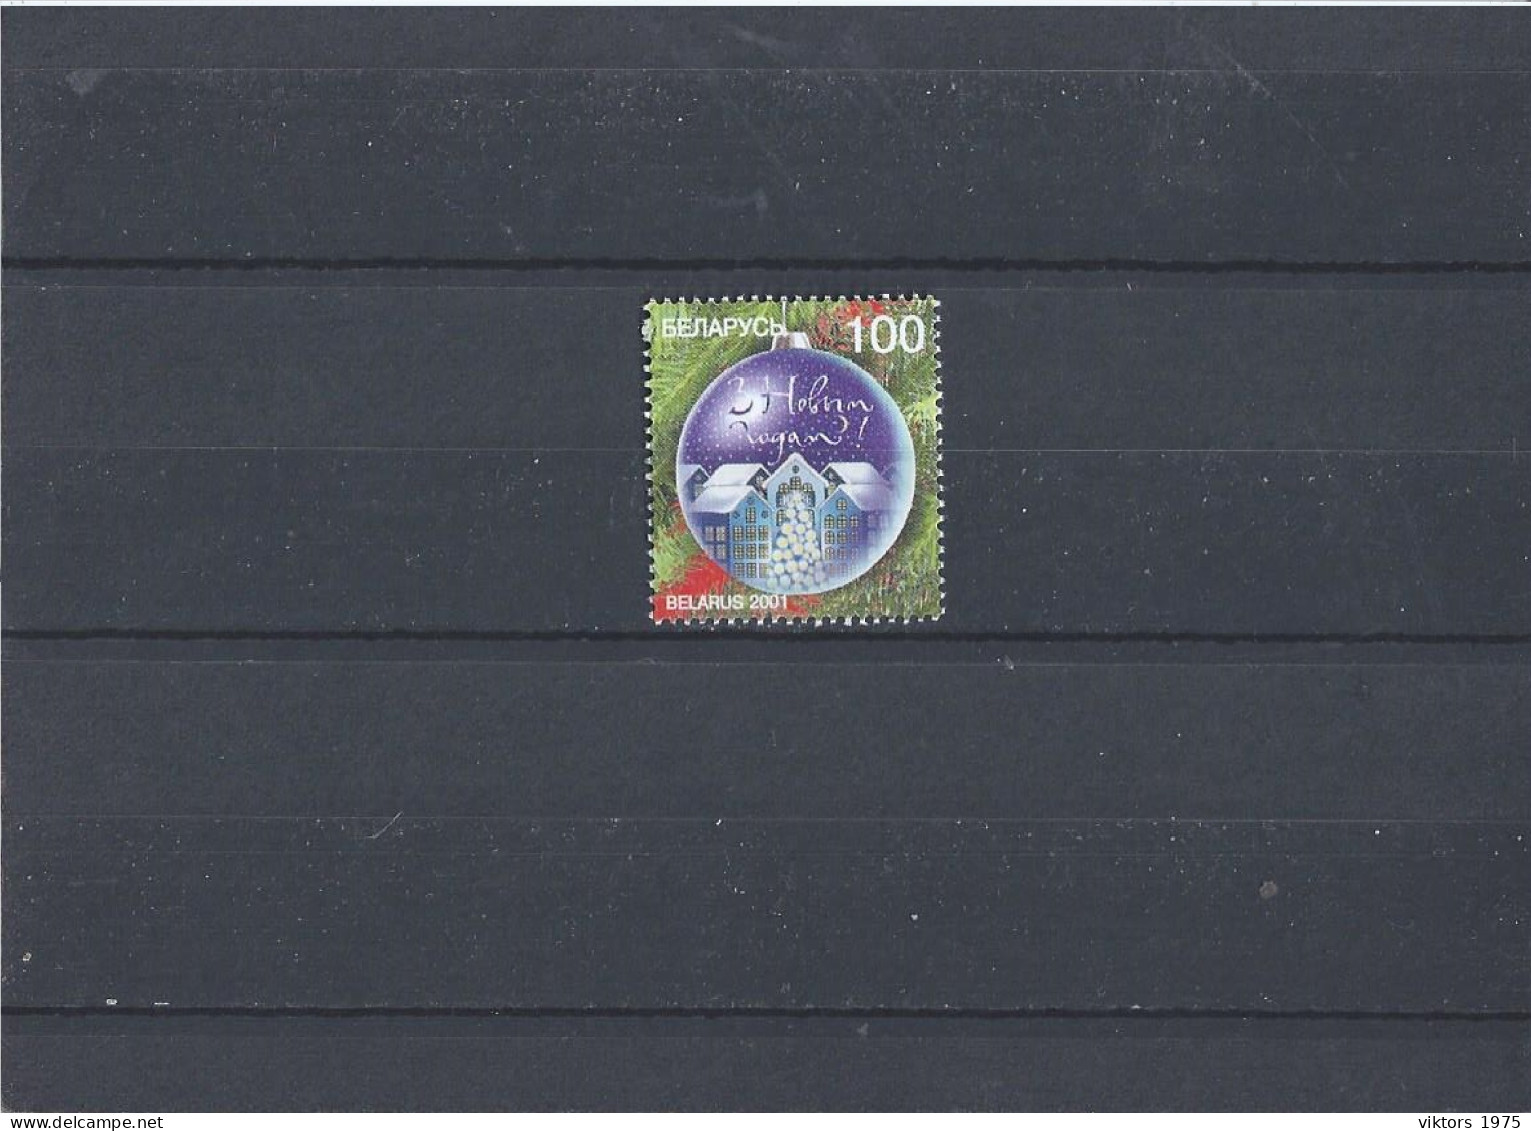 MNH Stamp Nr.436 In MICHEL Catalog - Belarus